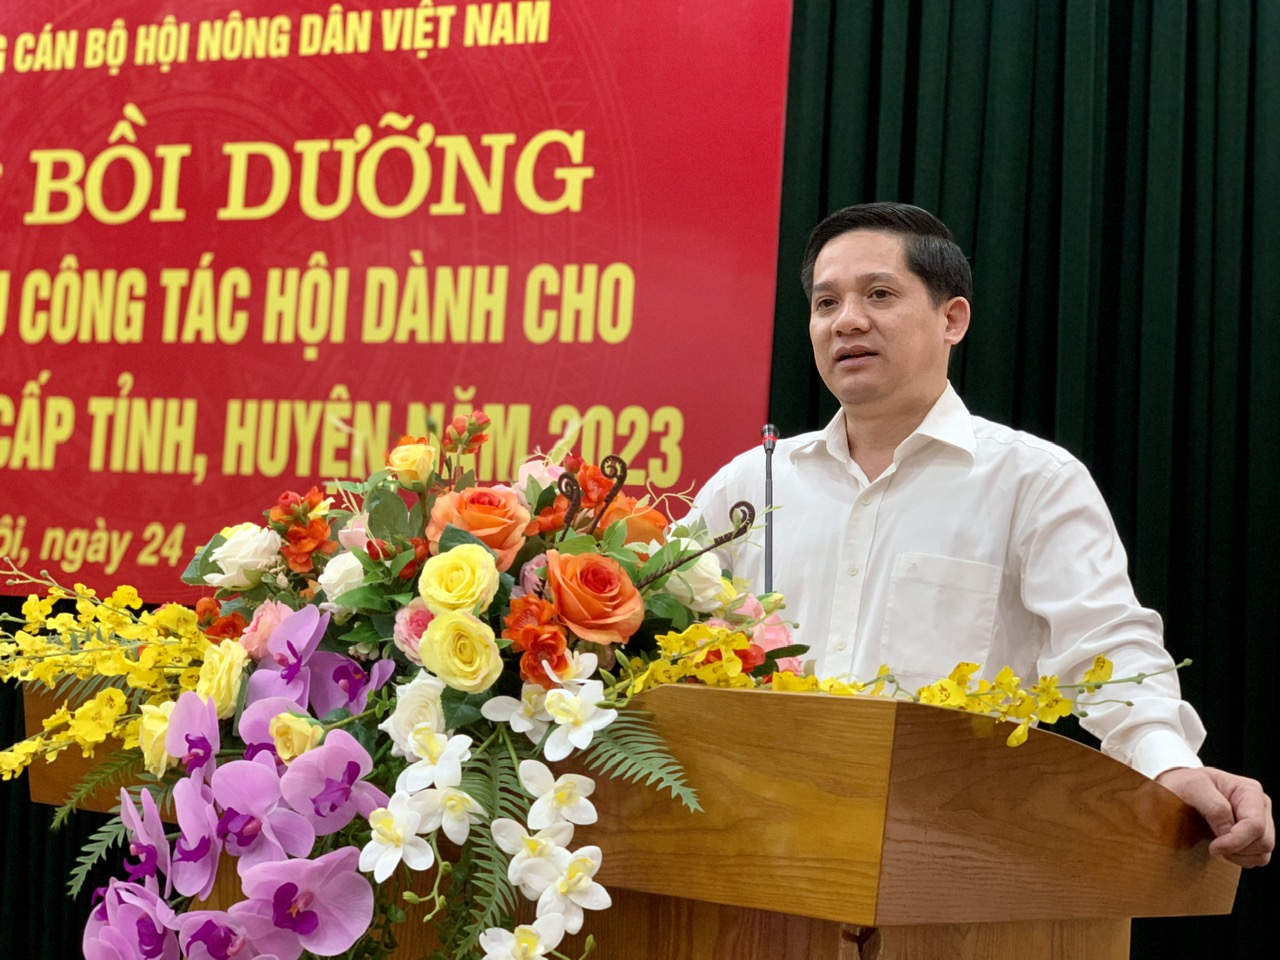 Trường Cán bộ Hội Nông dân Việt Nam khai giảng lớp bồi dưỡng nghiệp vụ công tác Hội cho cán bộ Hội cấp tỉnh, huyện - Ảnh 4.